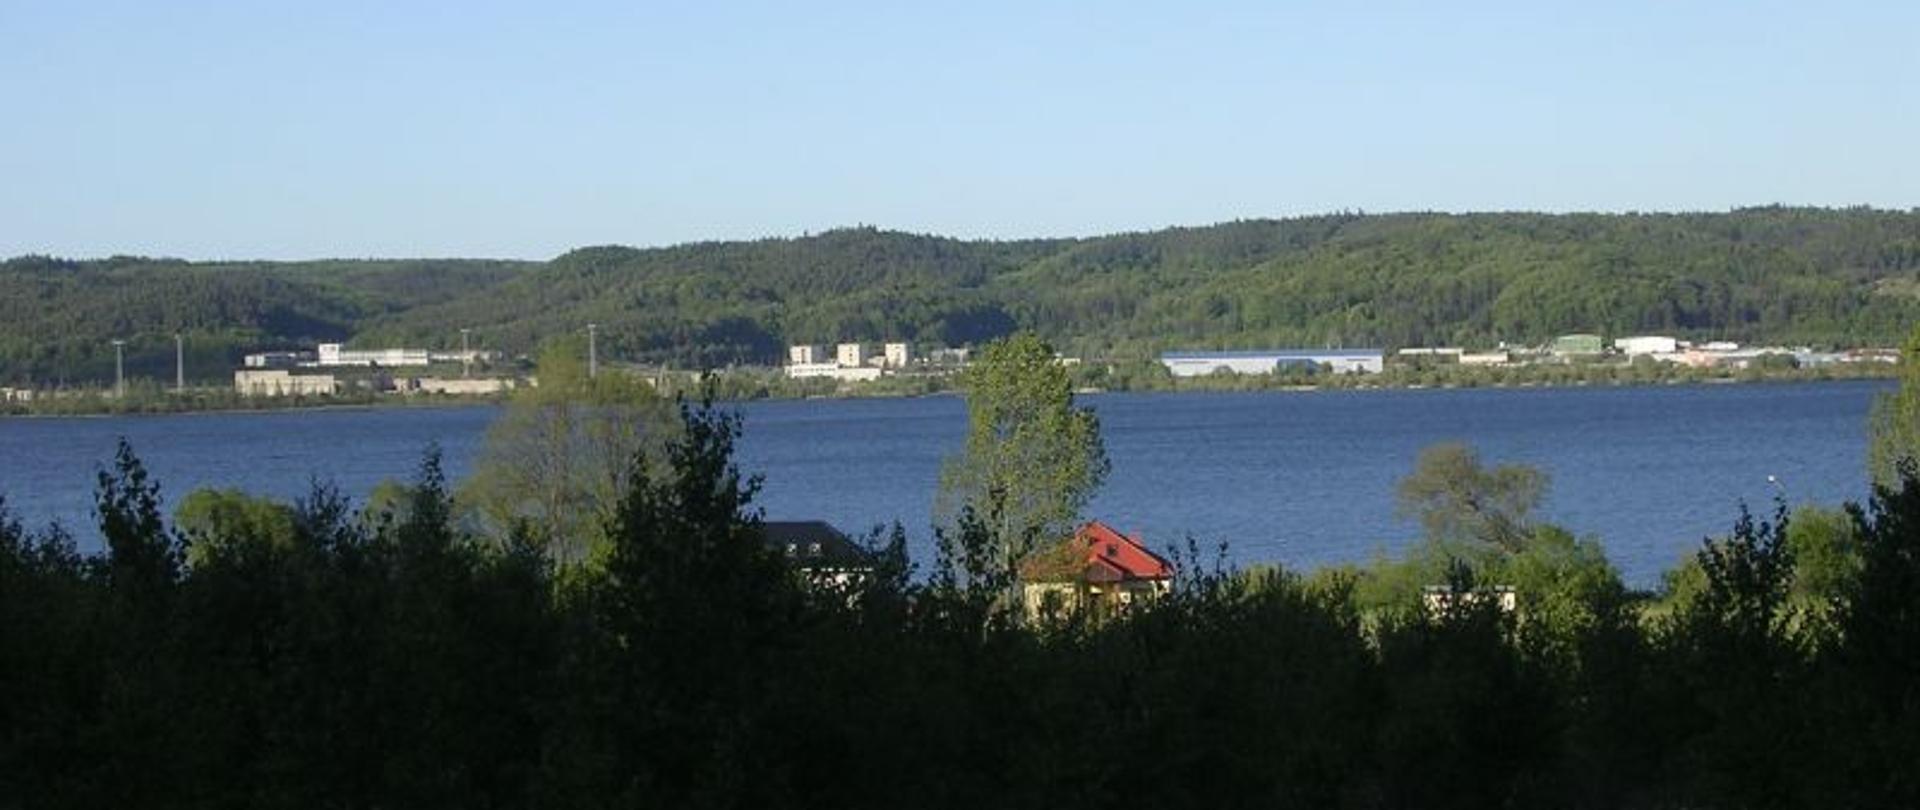 Zdjęcie pokazujące pozostałości po elektrowni jądrowej w Żarnowcu panorama nad jeziorem w tle widoczne pozostałości po zabudowaniach elektrowni jądrowej.